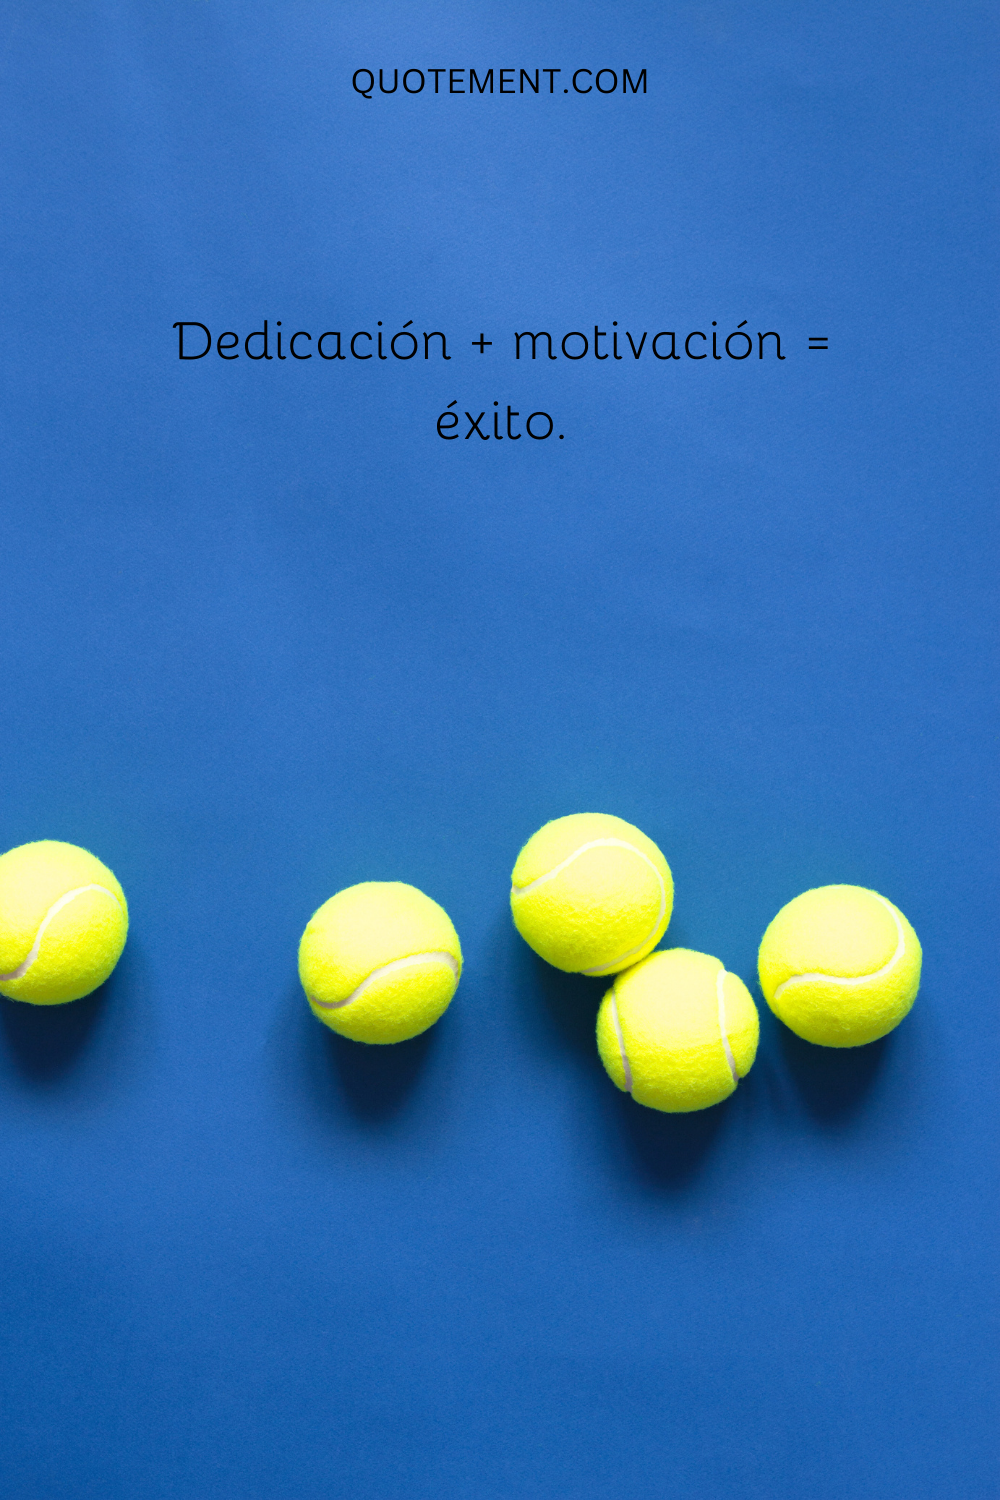 Dedicación + motivación = éxito.